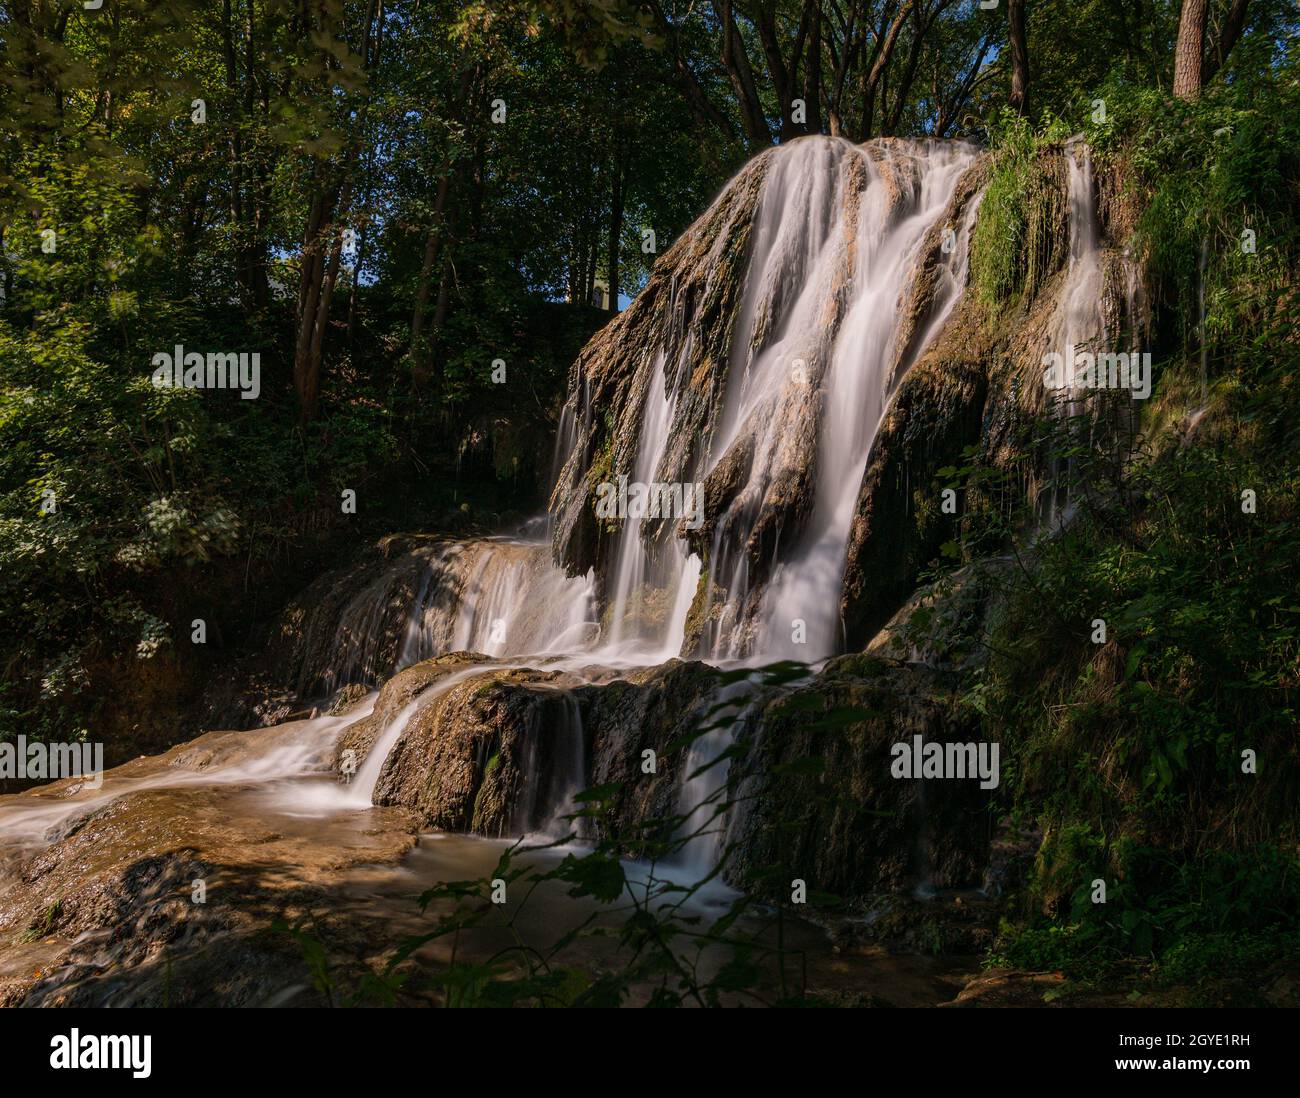 Ein sehr schöner Wasserfall in einer kleinen Waldlichtung Stock Photo